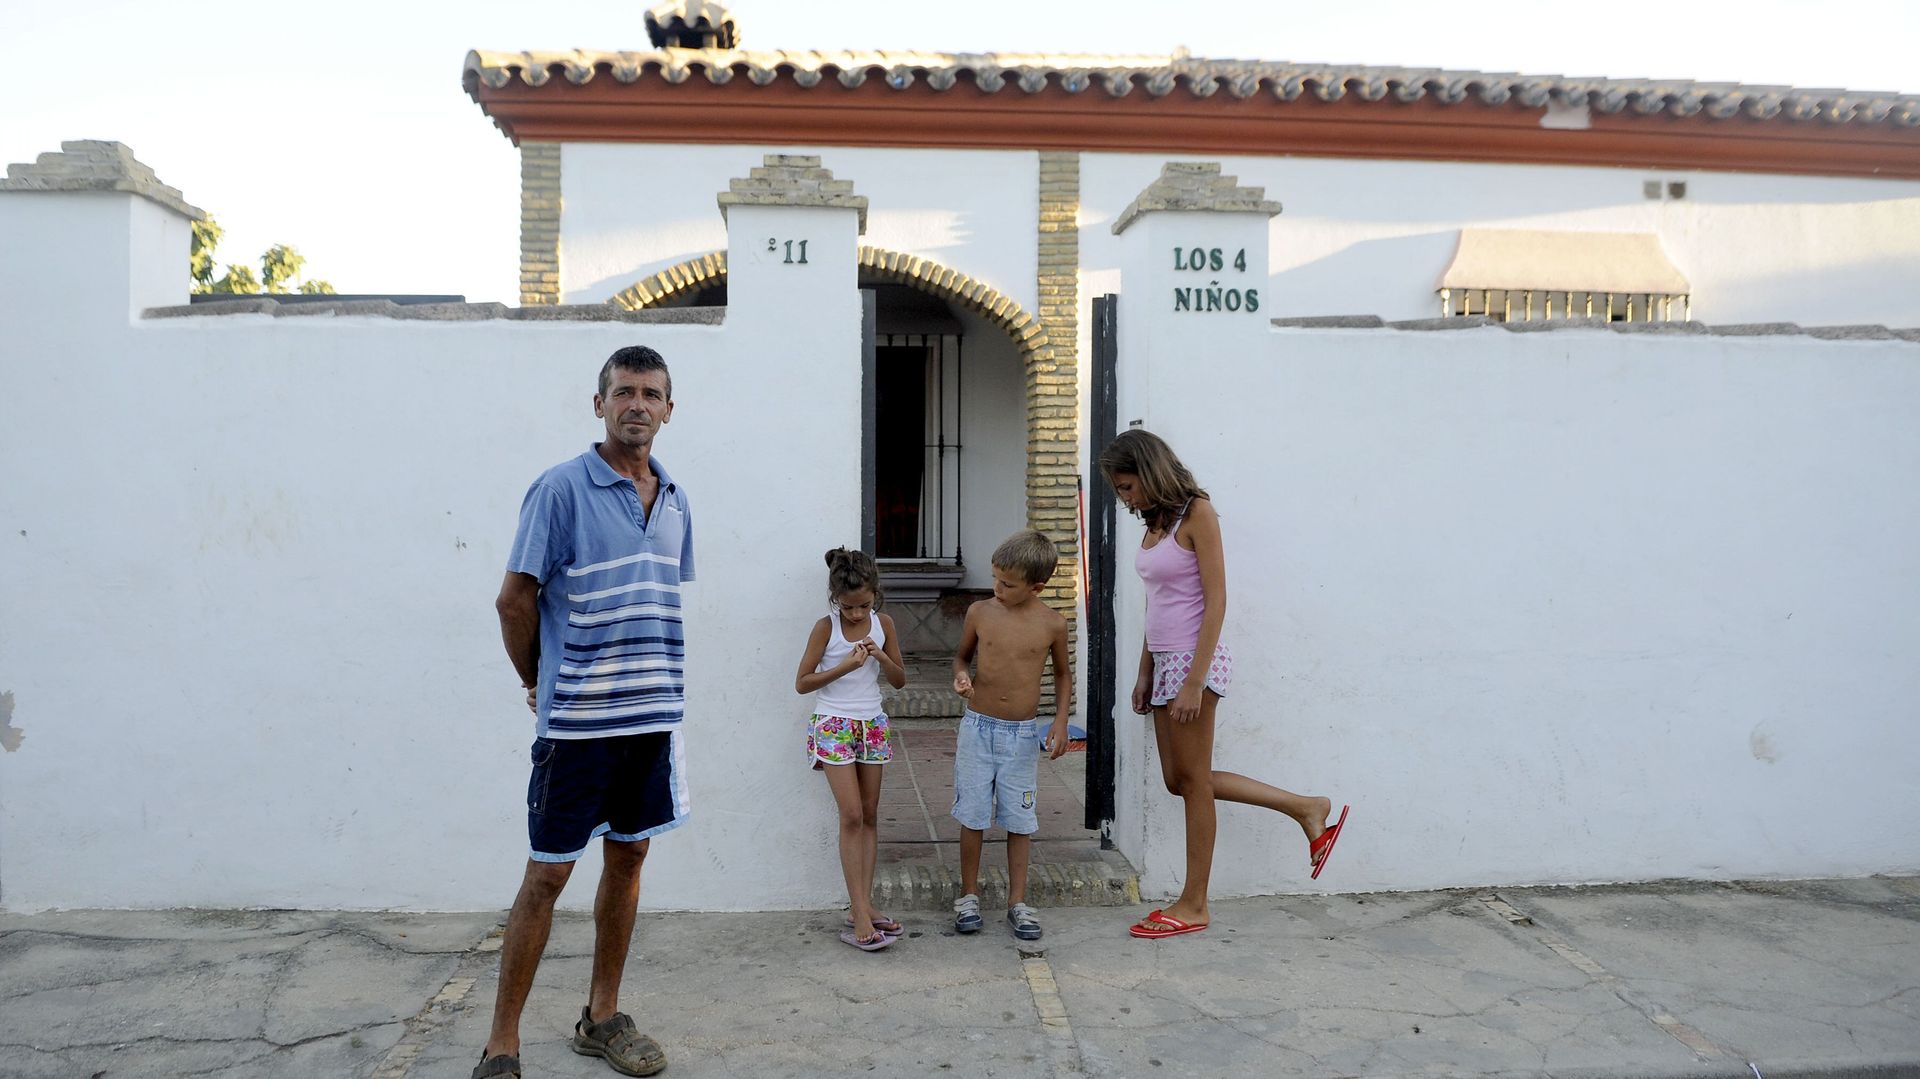 Le chômage frappe l’Andalousie de plein fouet. Un propriétaire devant la maison dont il sera peut-être expulsé.